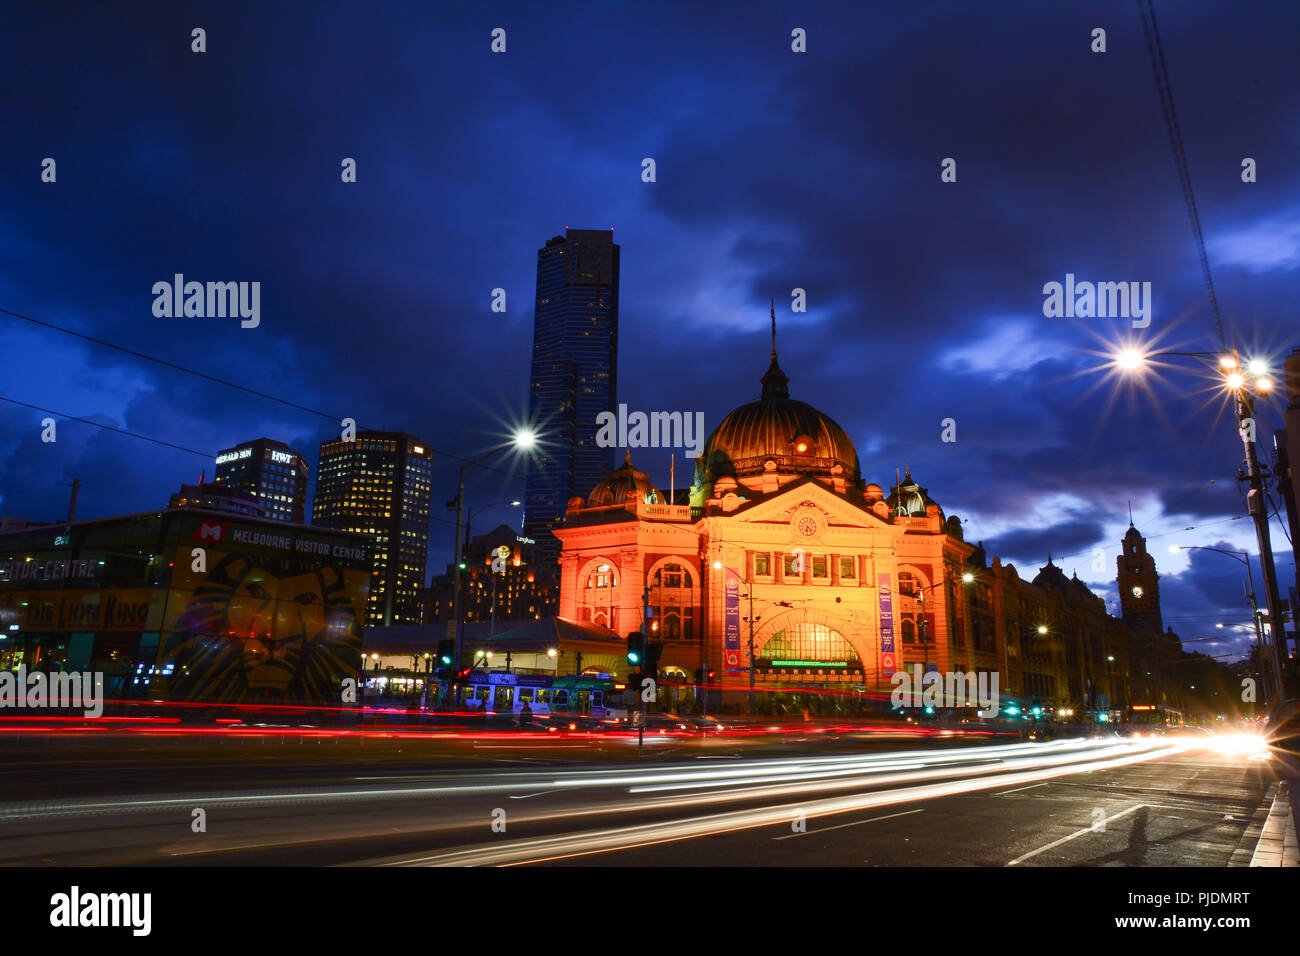 La gare de Flinders Street la nuit, le plus célèbre monument à Melbourne Banque D'Images